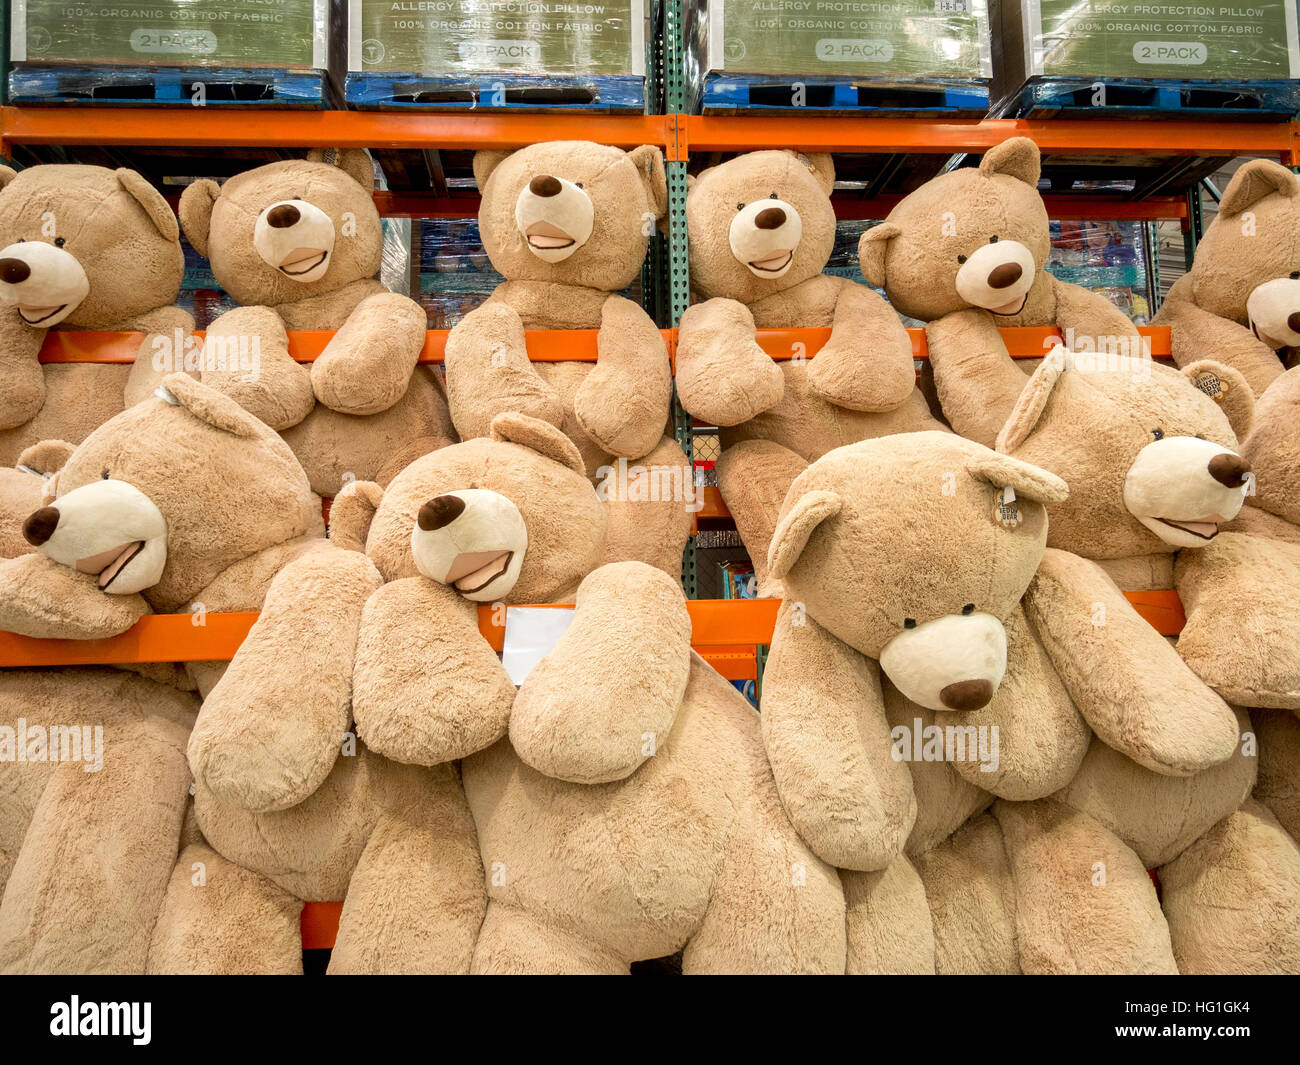 teddy bear in store